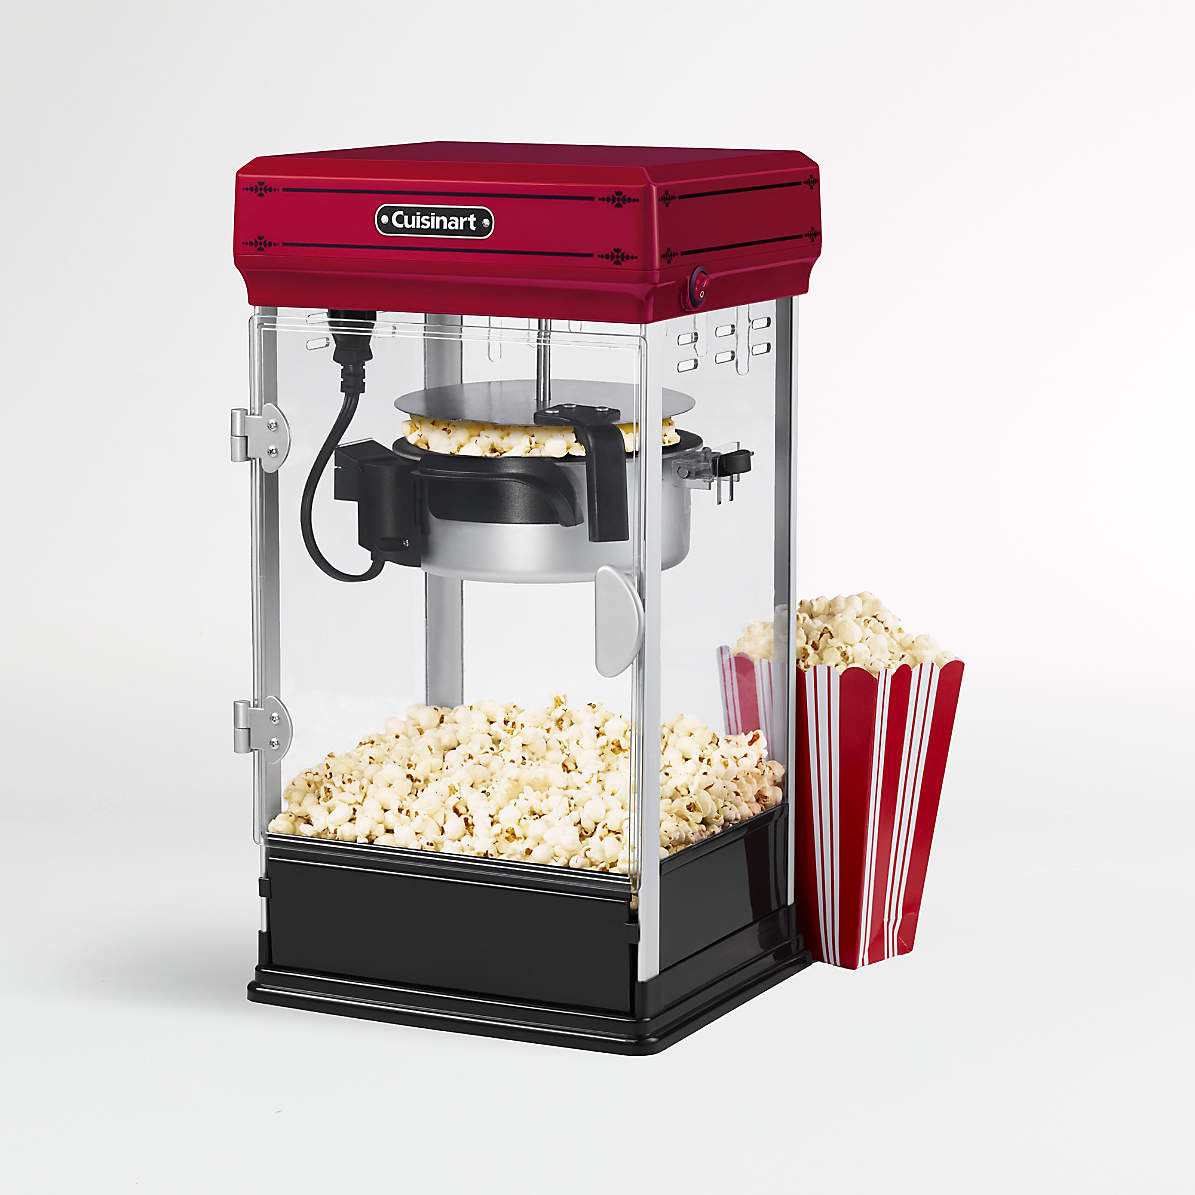 Cuisinart Professional Popcorn Maker Reviews Crate Barrel